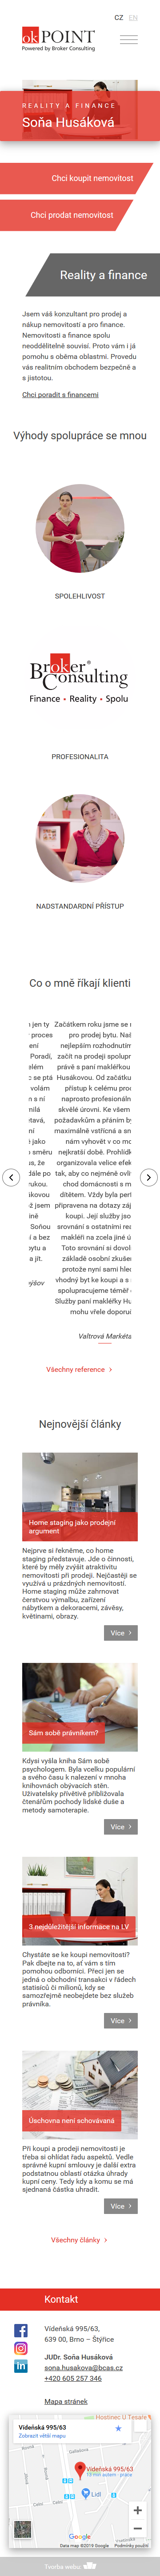 Tvorba firemního webu sonahusakova.cz - Screenshot mobilní verze